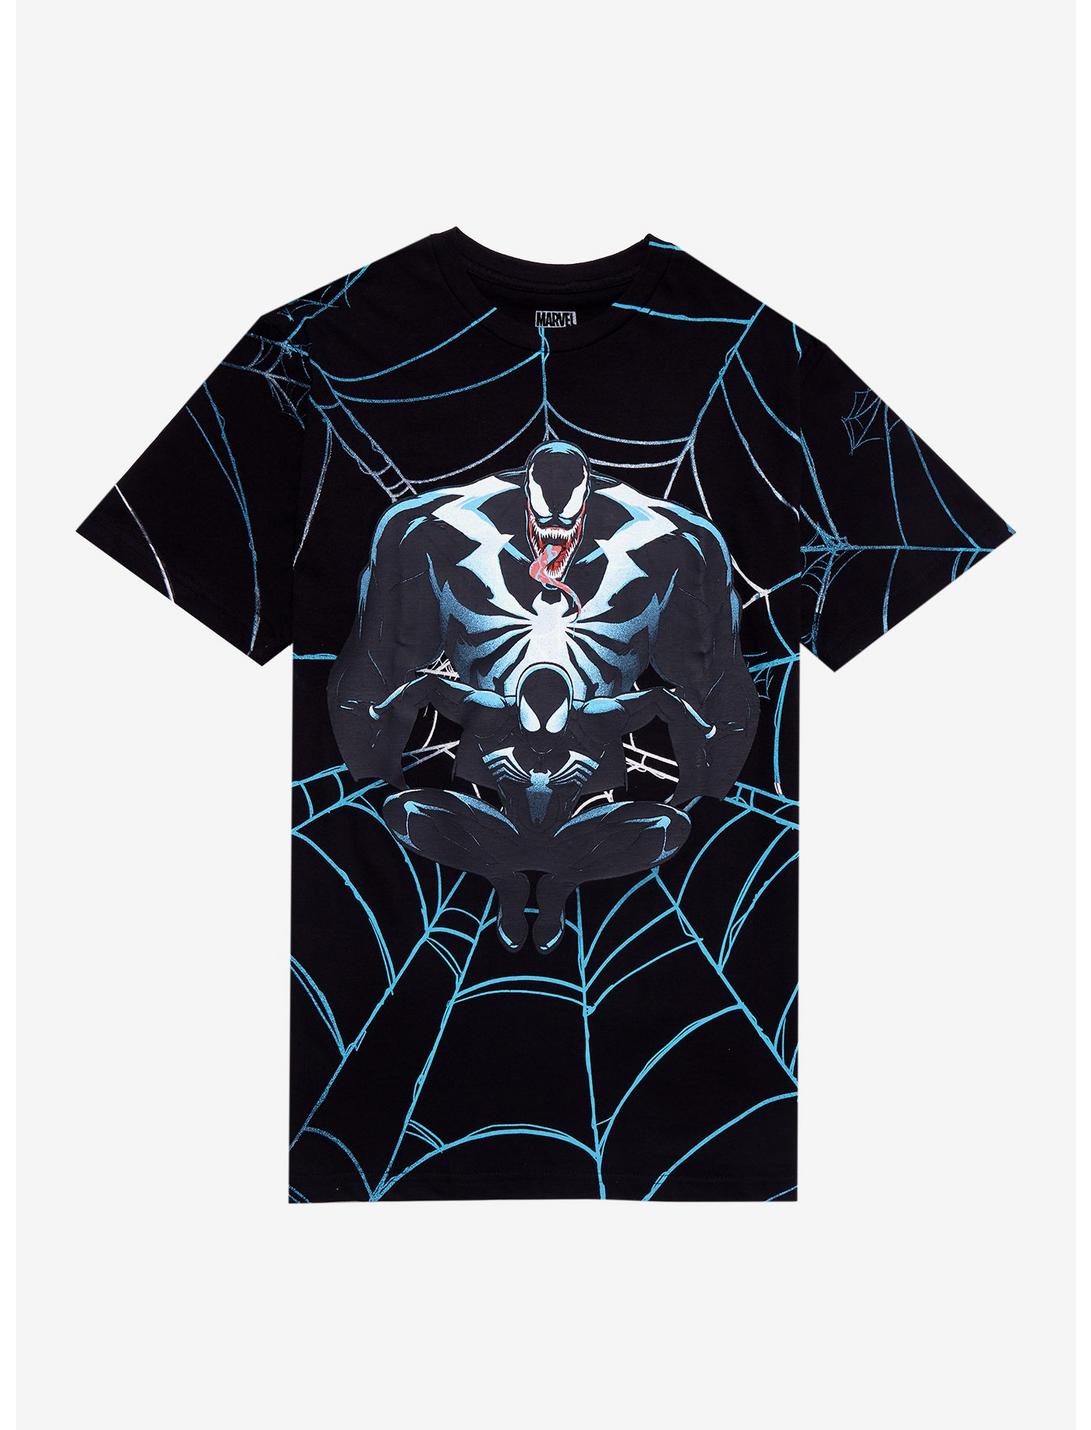 Marvel Spider-Man 2 Venom T-Shirt, BLACK, hi-res